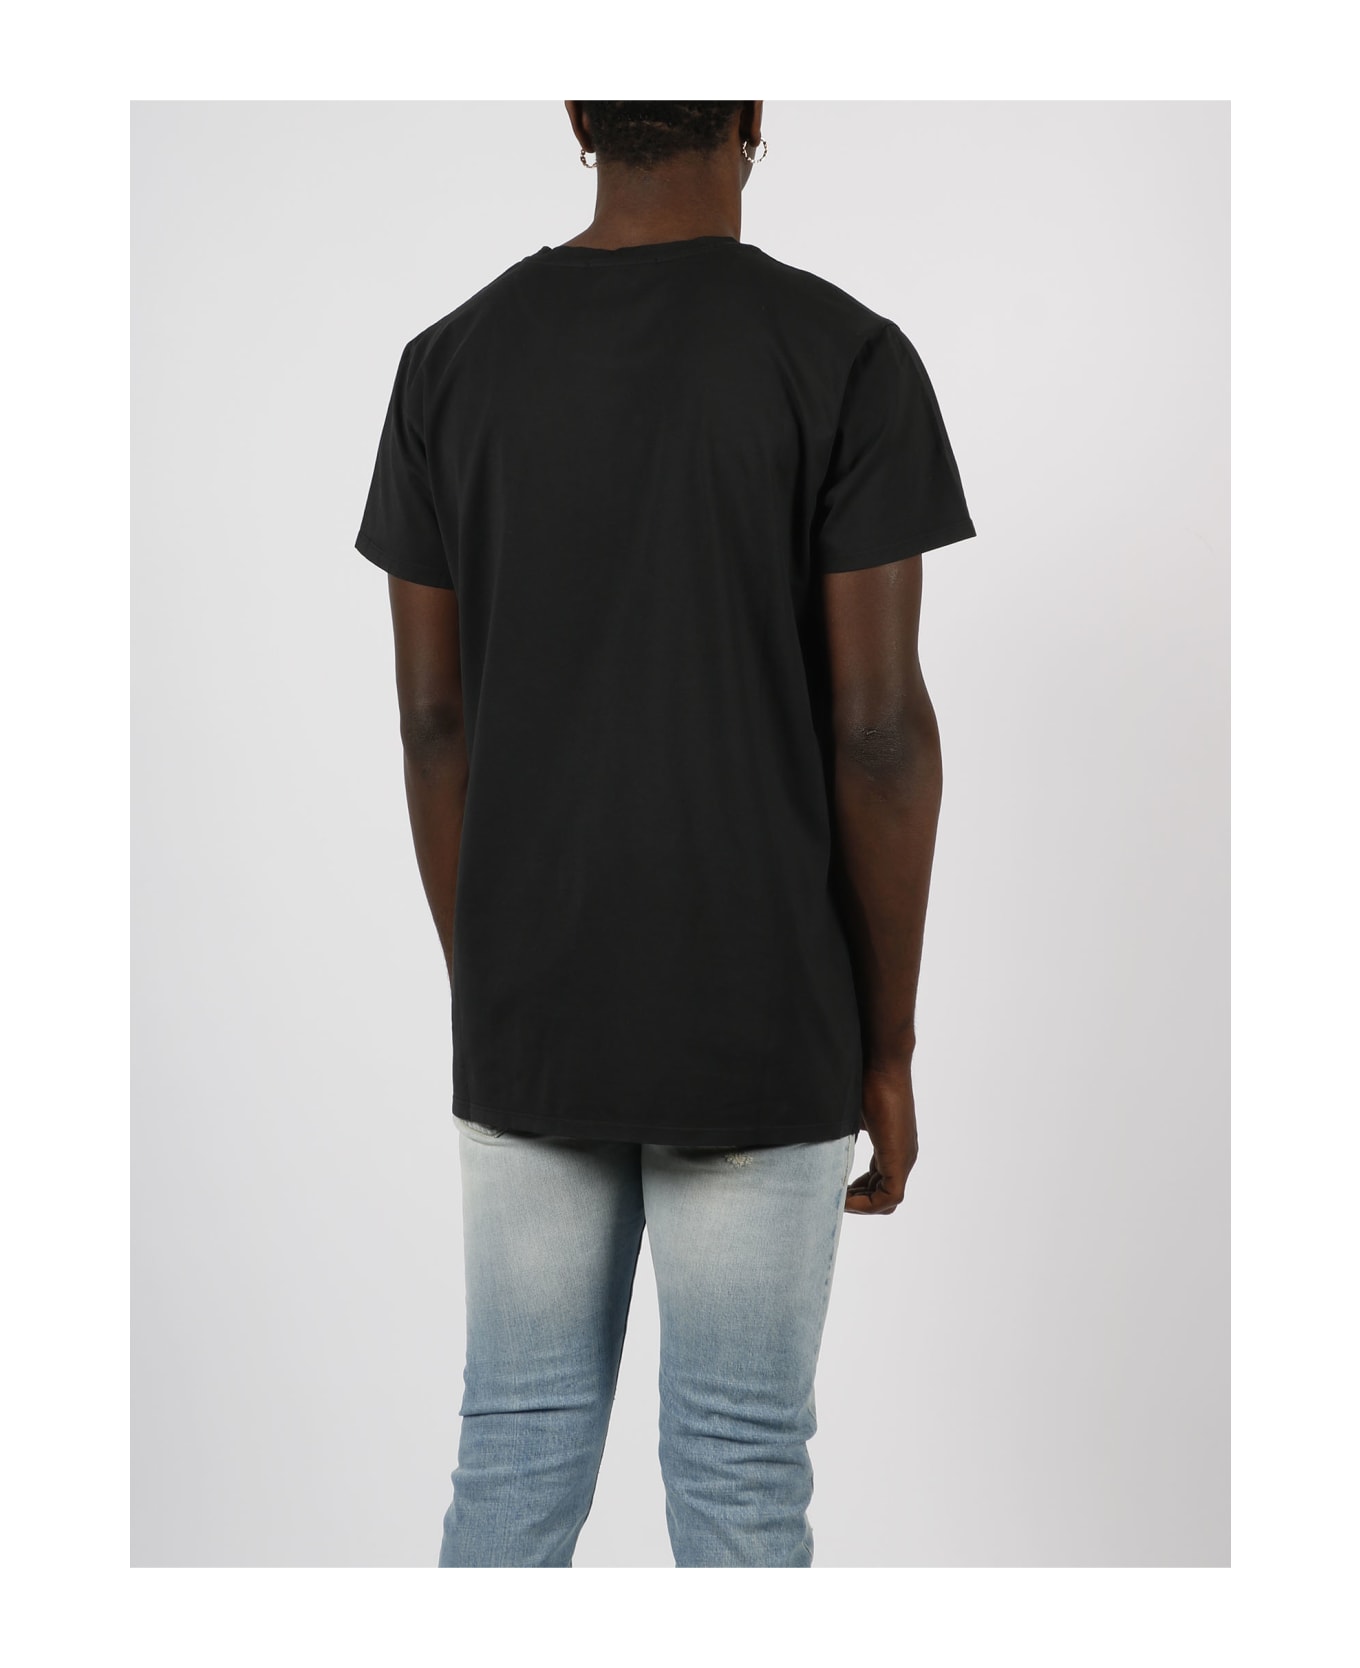 14 Bros Boo Print T-shirt - Black シャツ